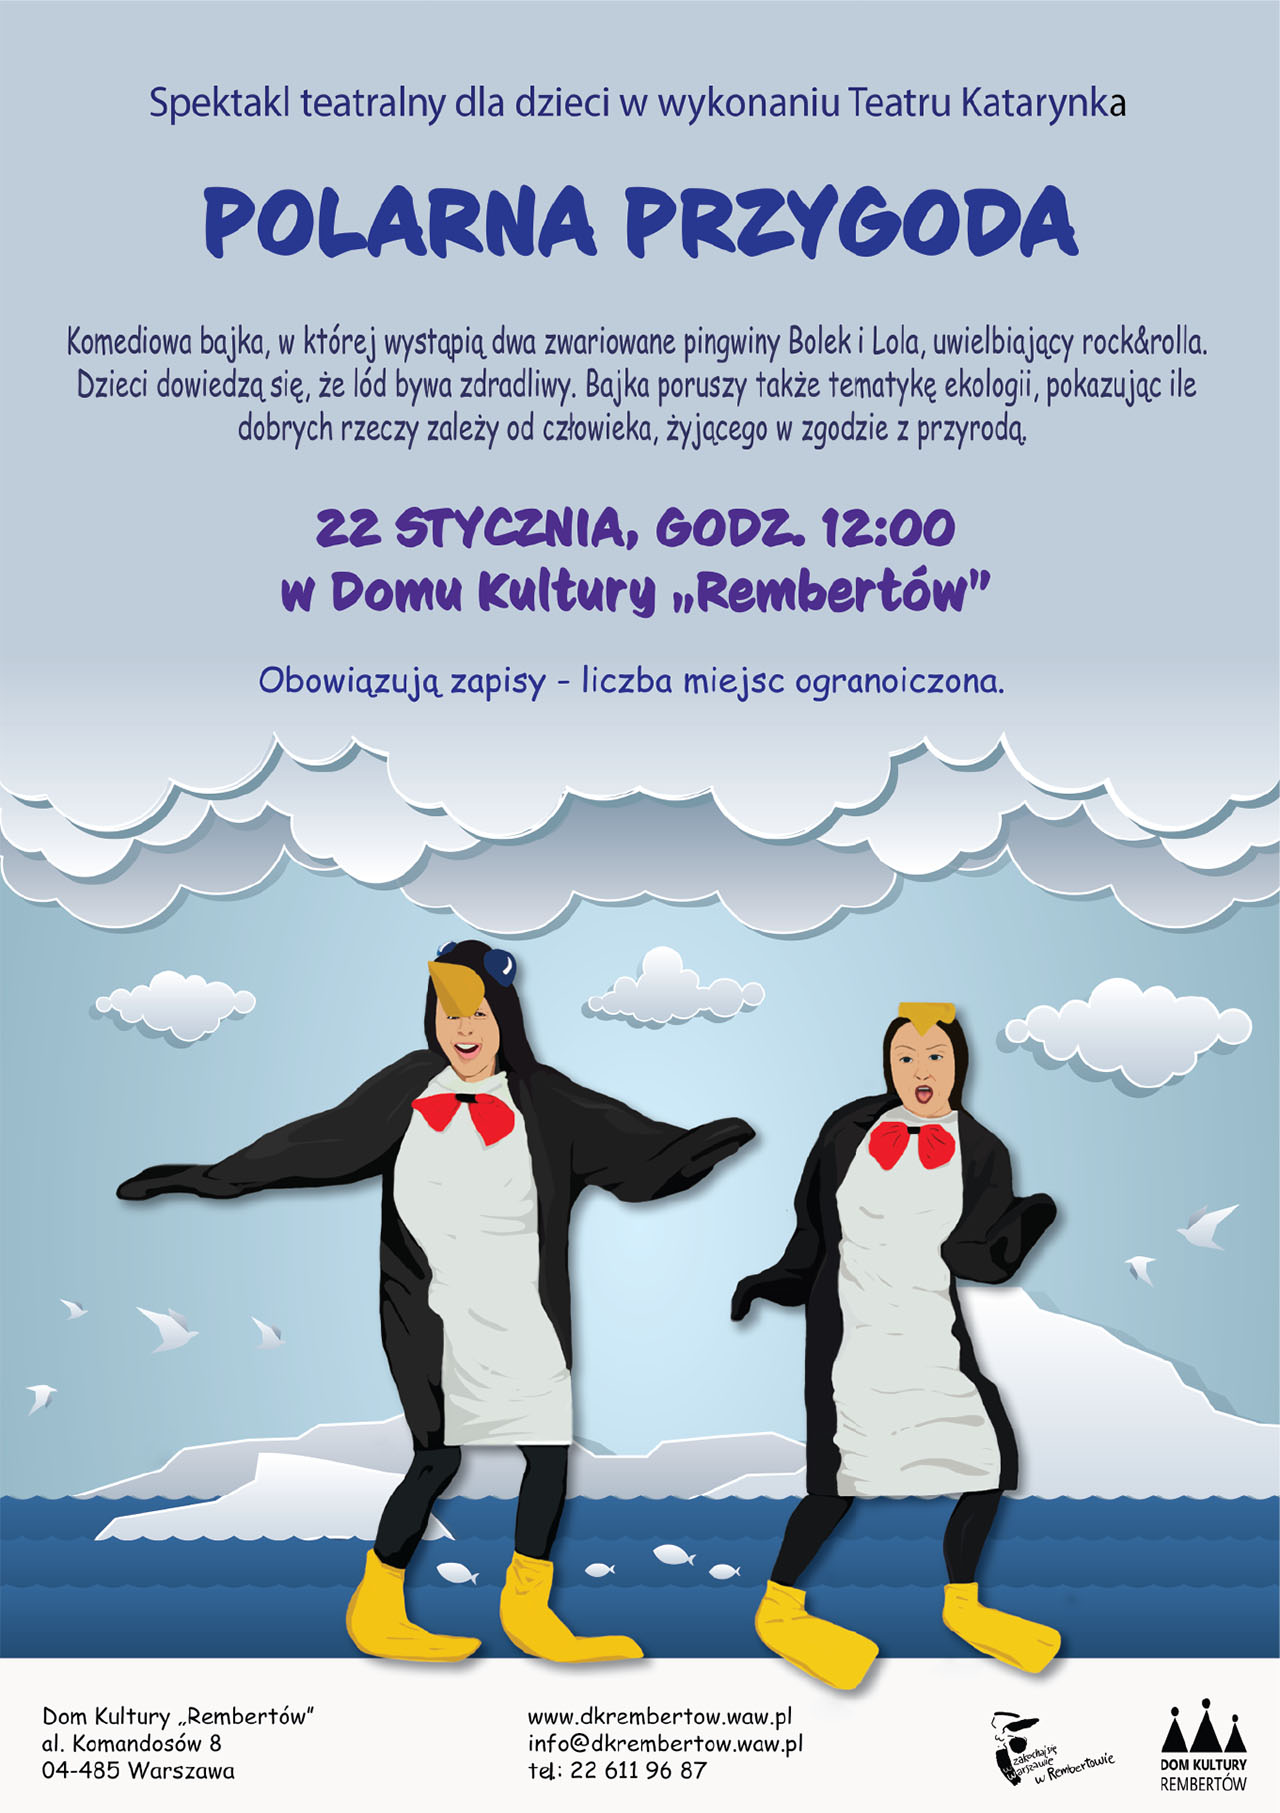 Spektakl teatralny dla dzieci „Polarna Przygoda” odbędzie się 22 stycznia o godz. 12:00  Wystąpi Teatr Katarynka  Obowiązują zapisy